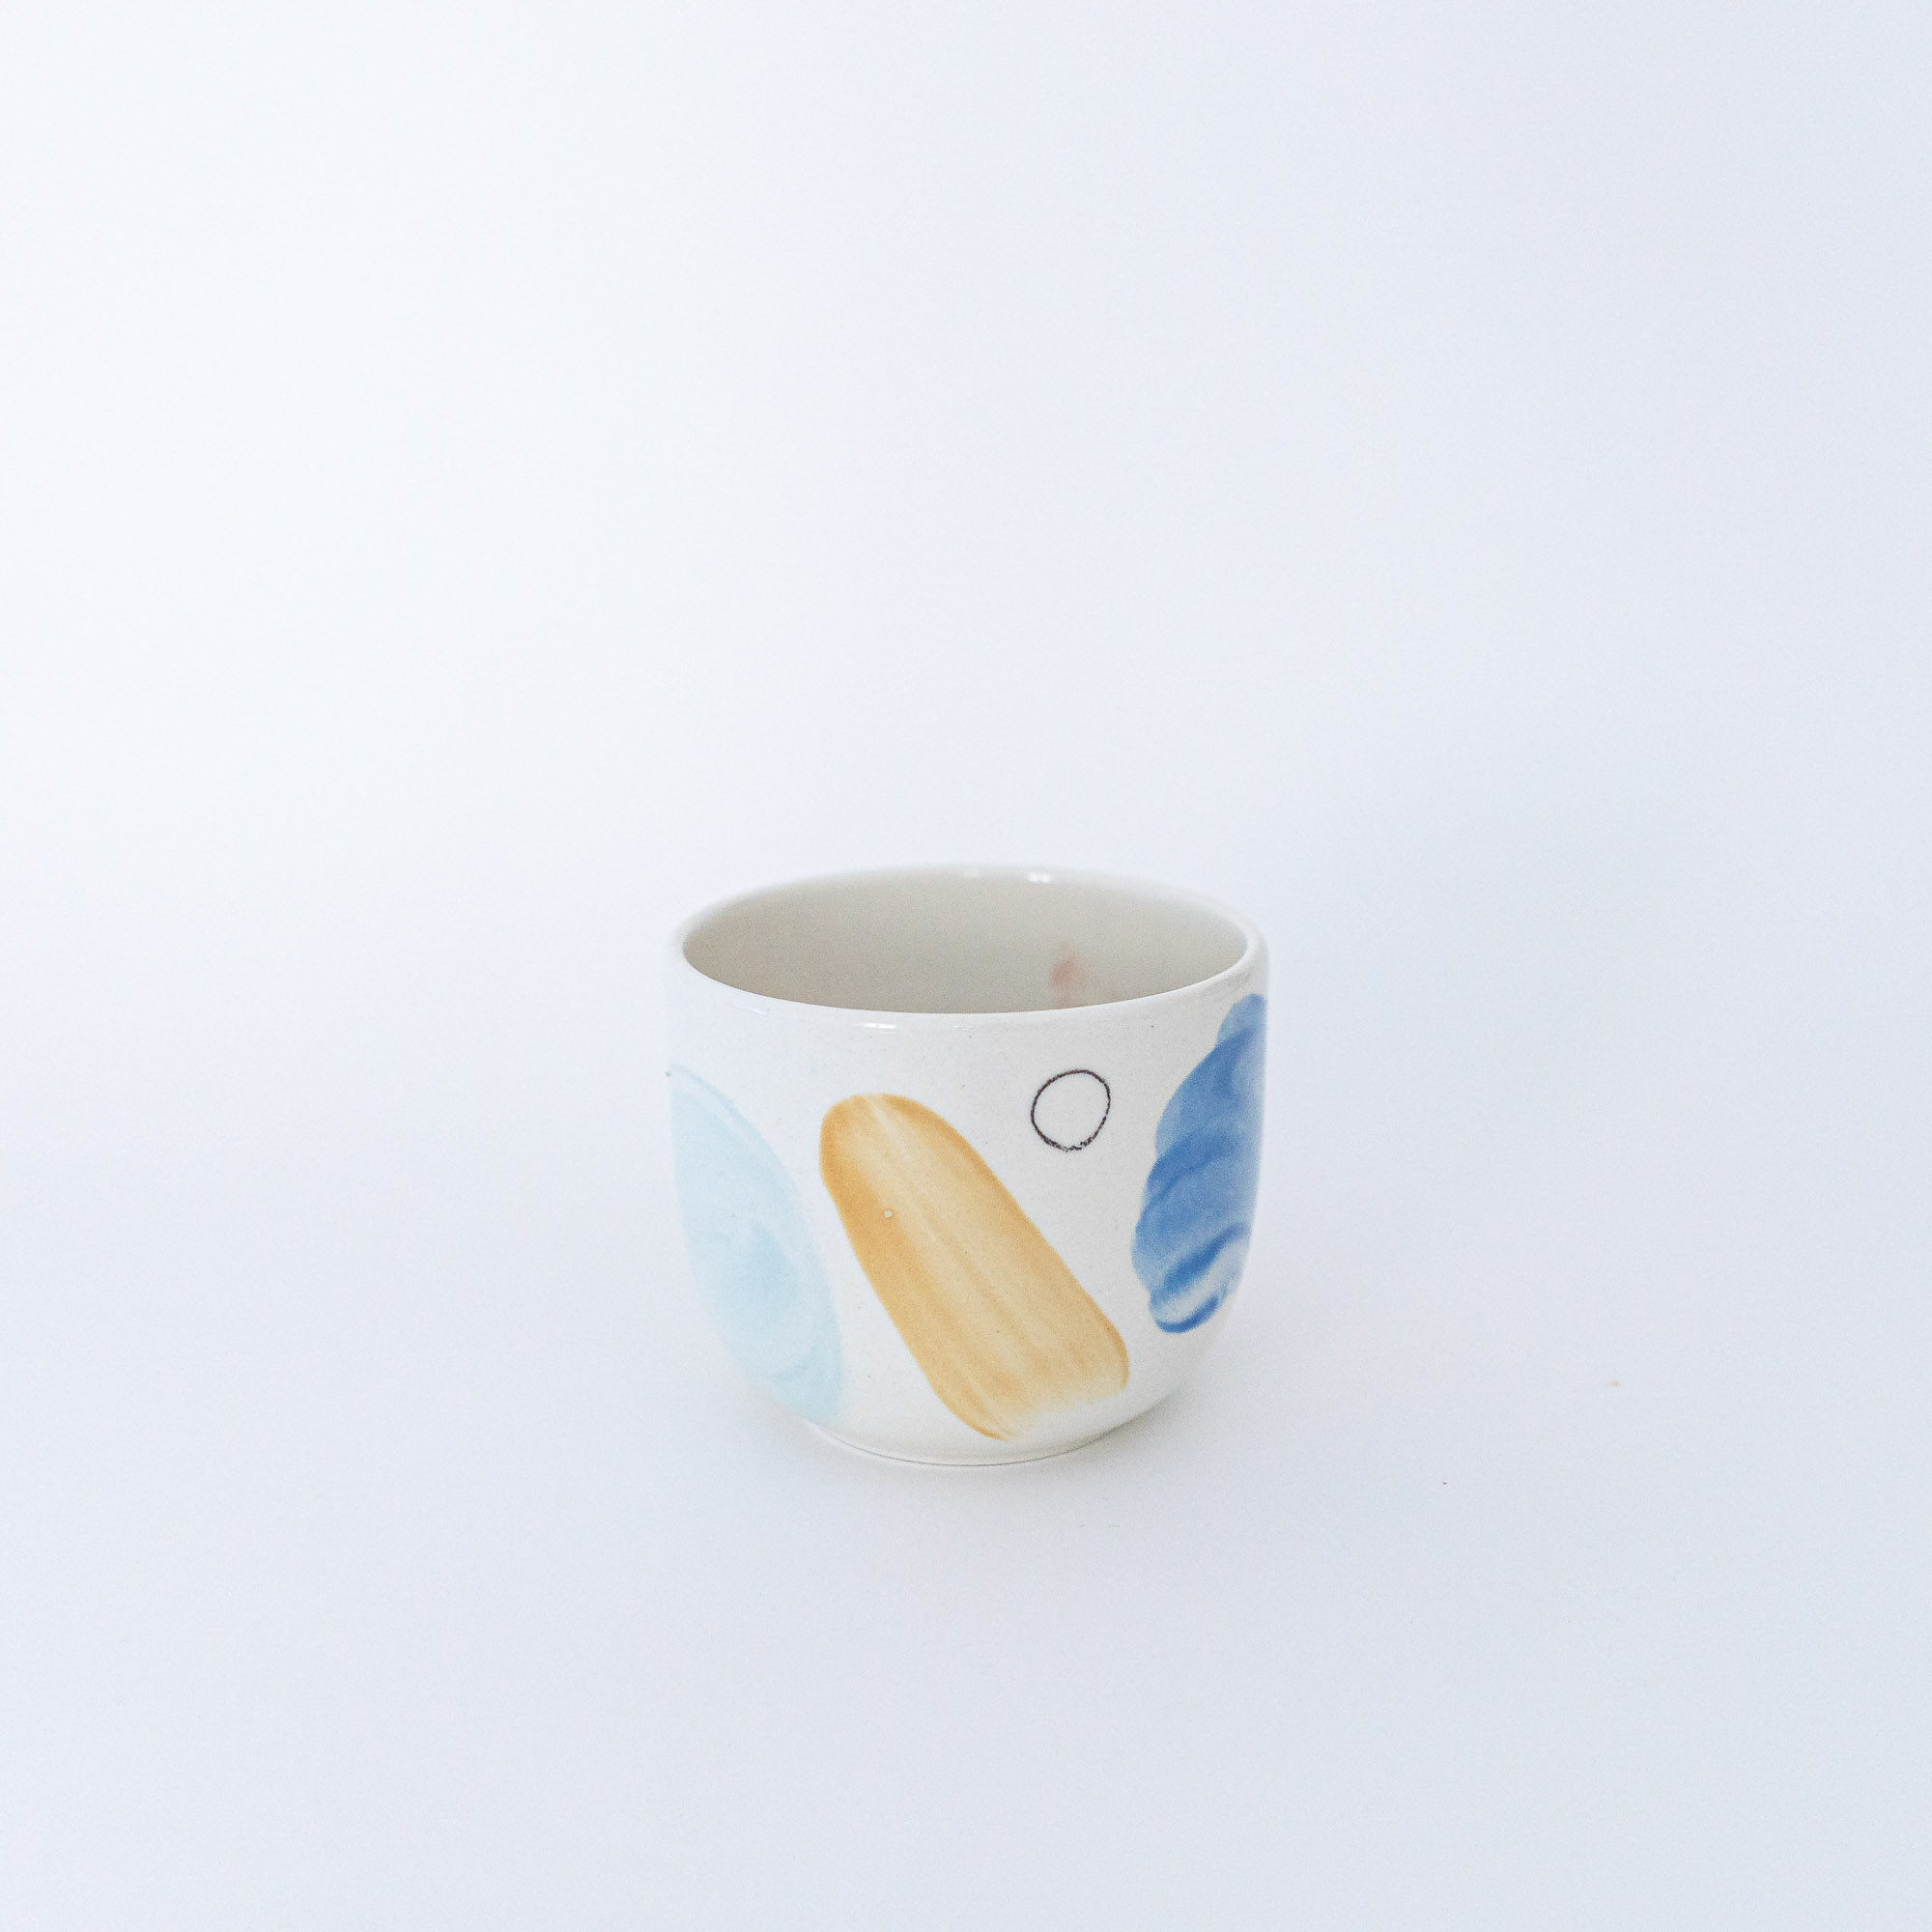 nicenicenice keramik00052